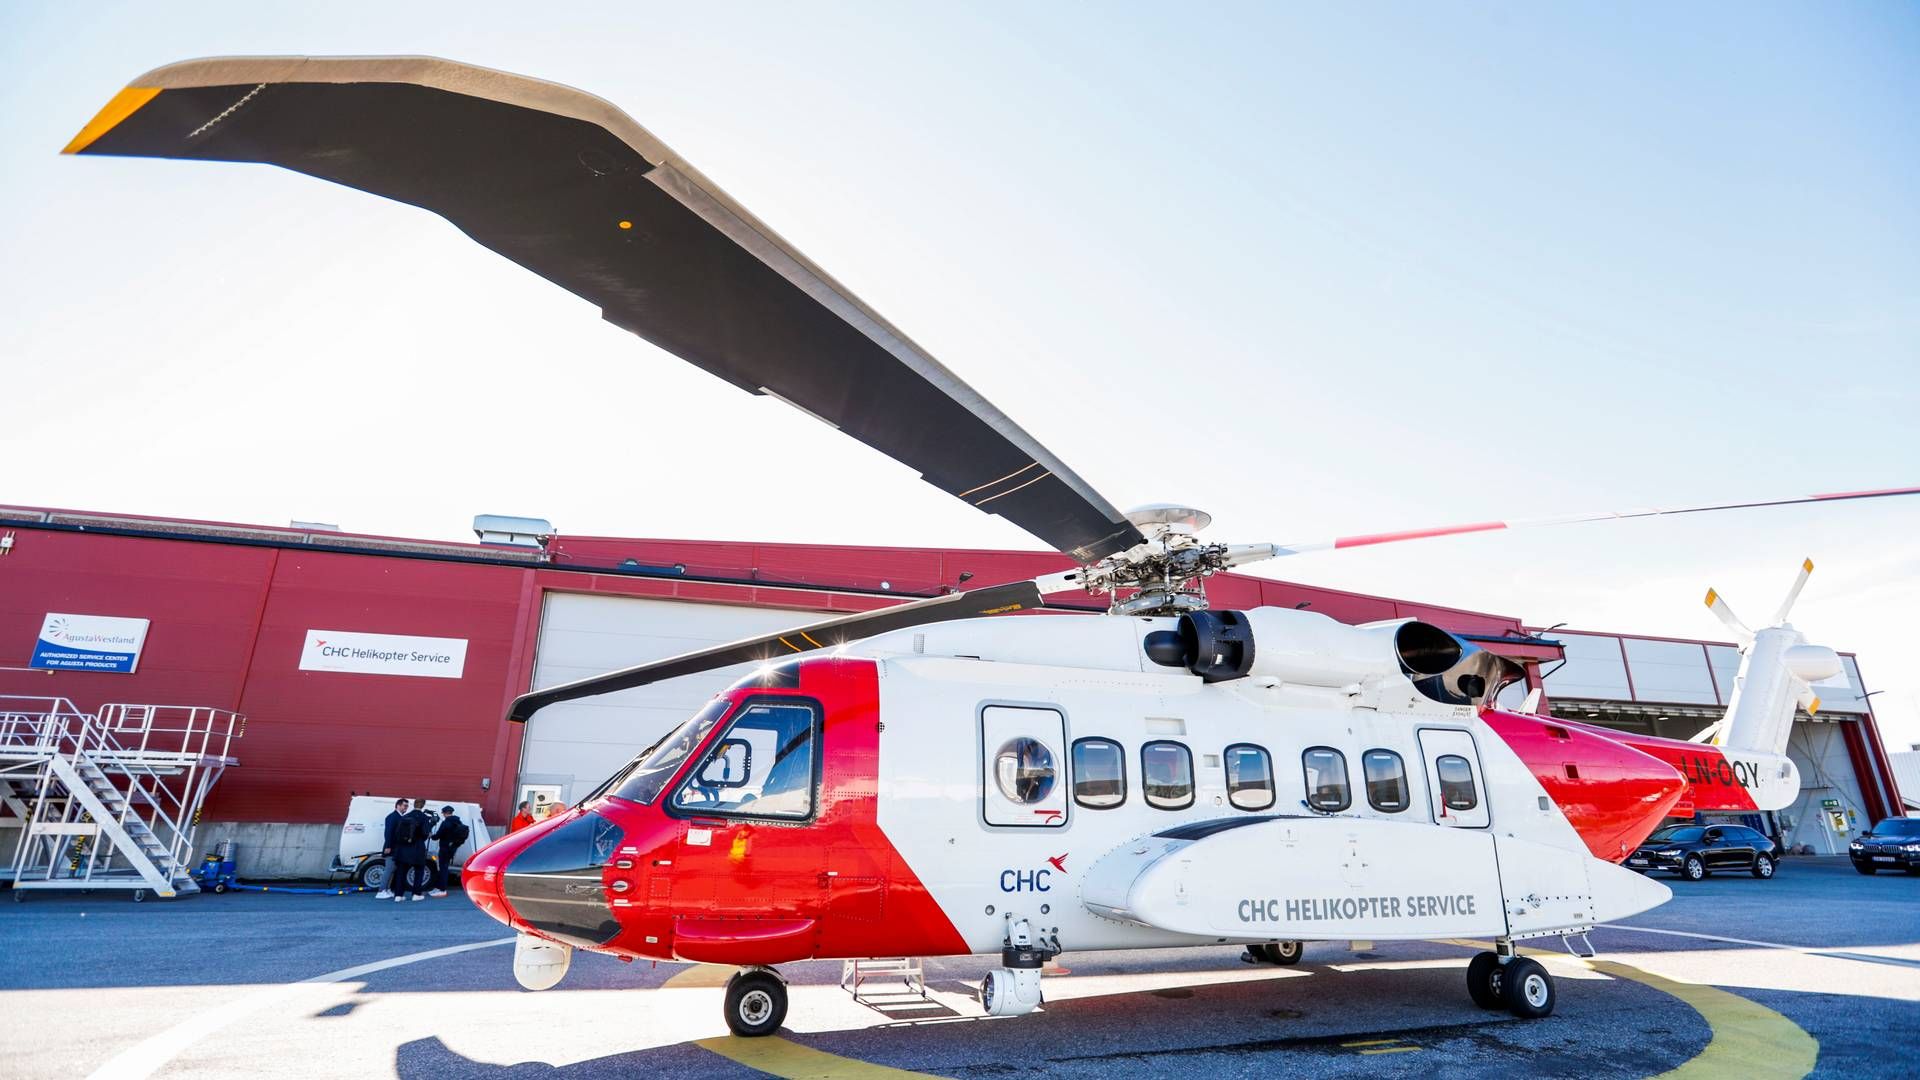 ALVORLIGE HENDELSER: Sikorsky S-92 har hatt tre alvorlige hendelser i Norge siden 2020. | Foto: Rune Stoltz Bertinussen / NTB